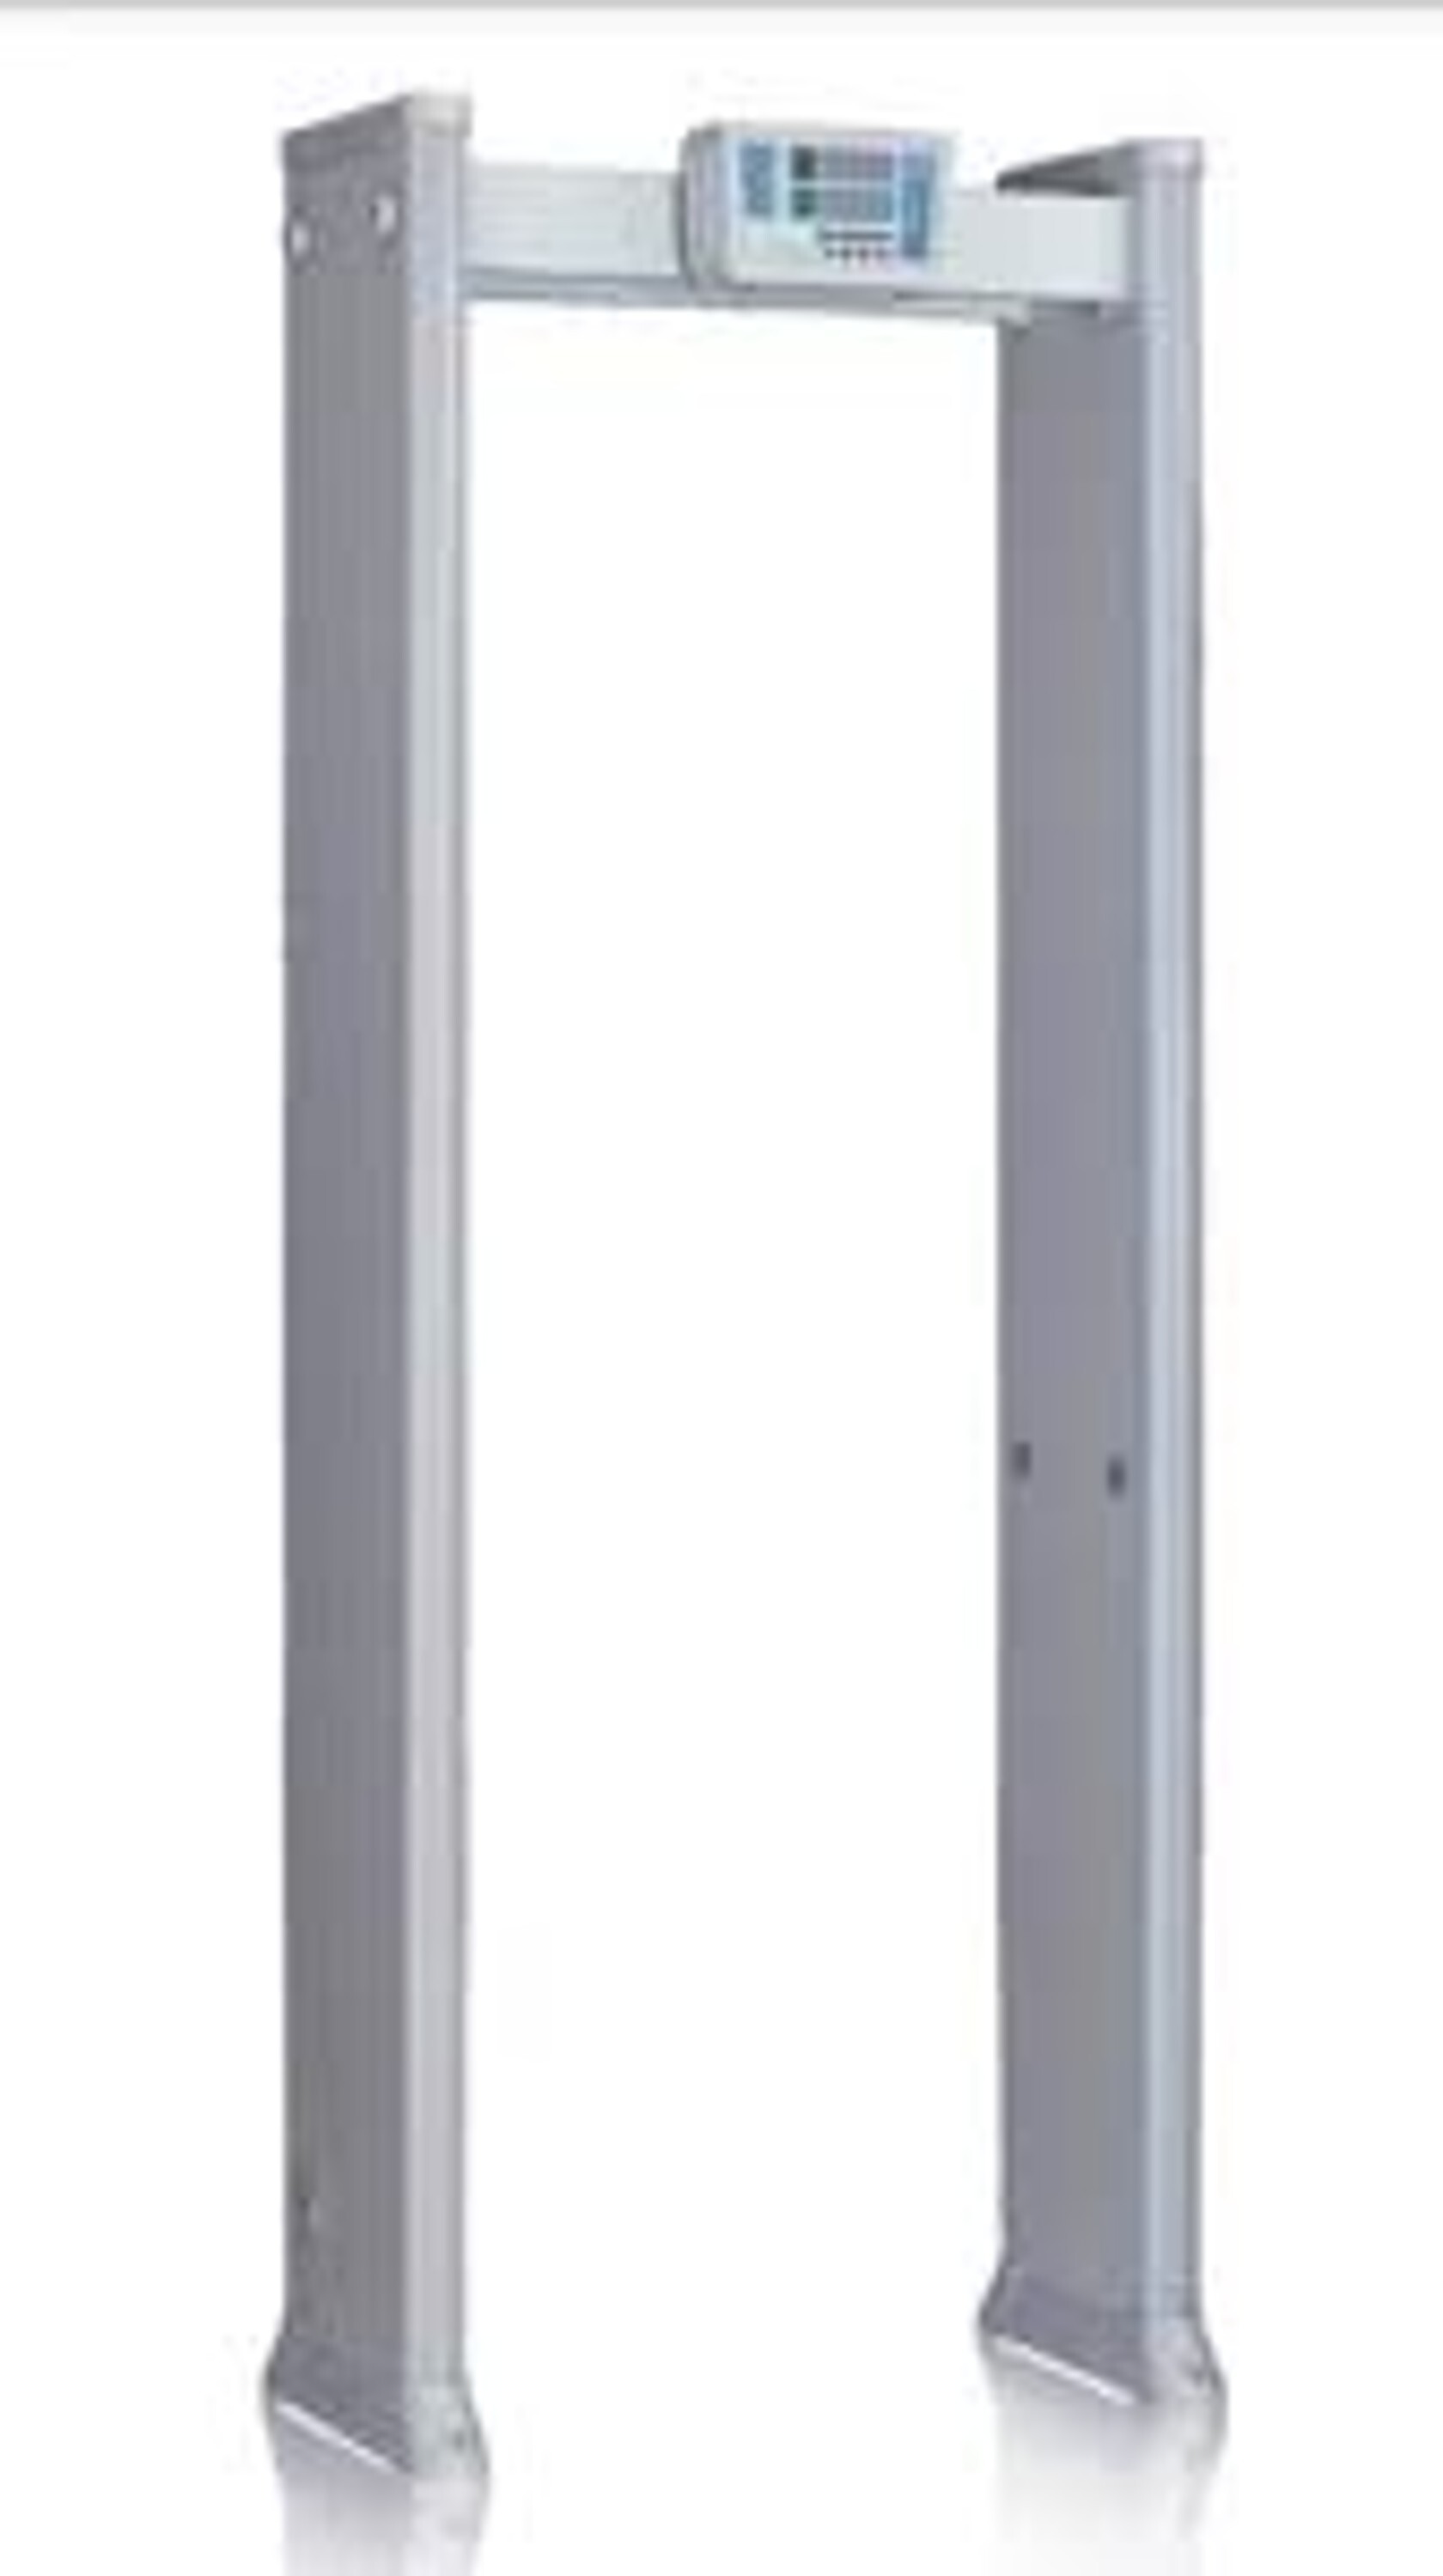 Door Frame Metal Detector -6 Zone